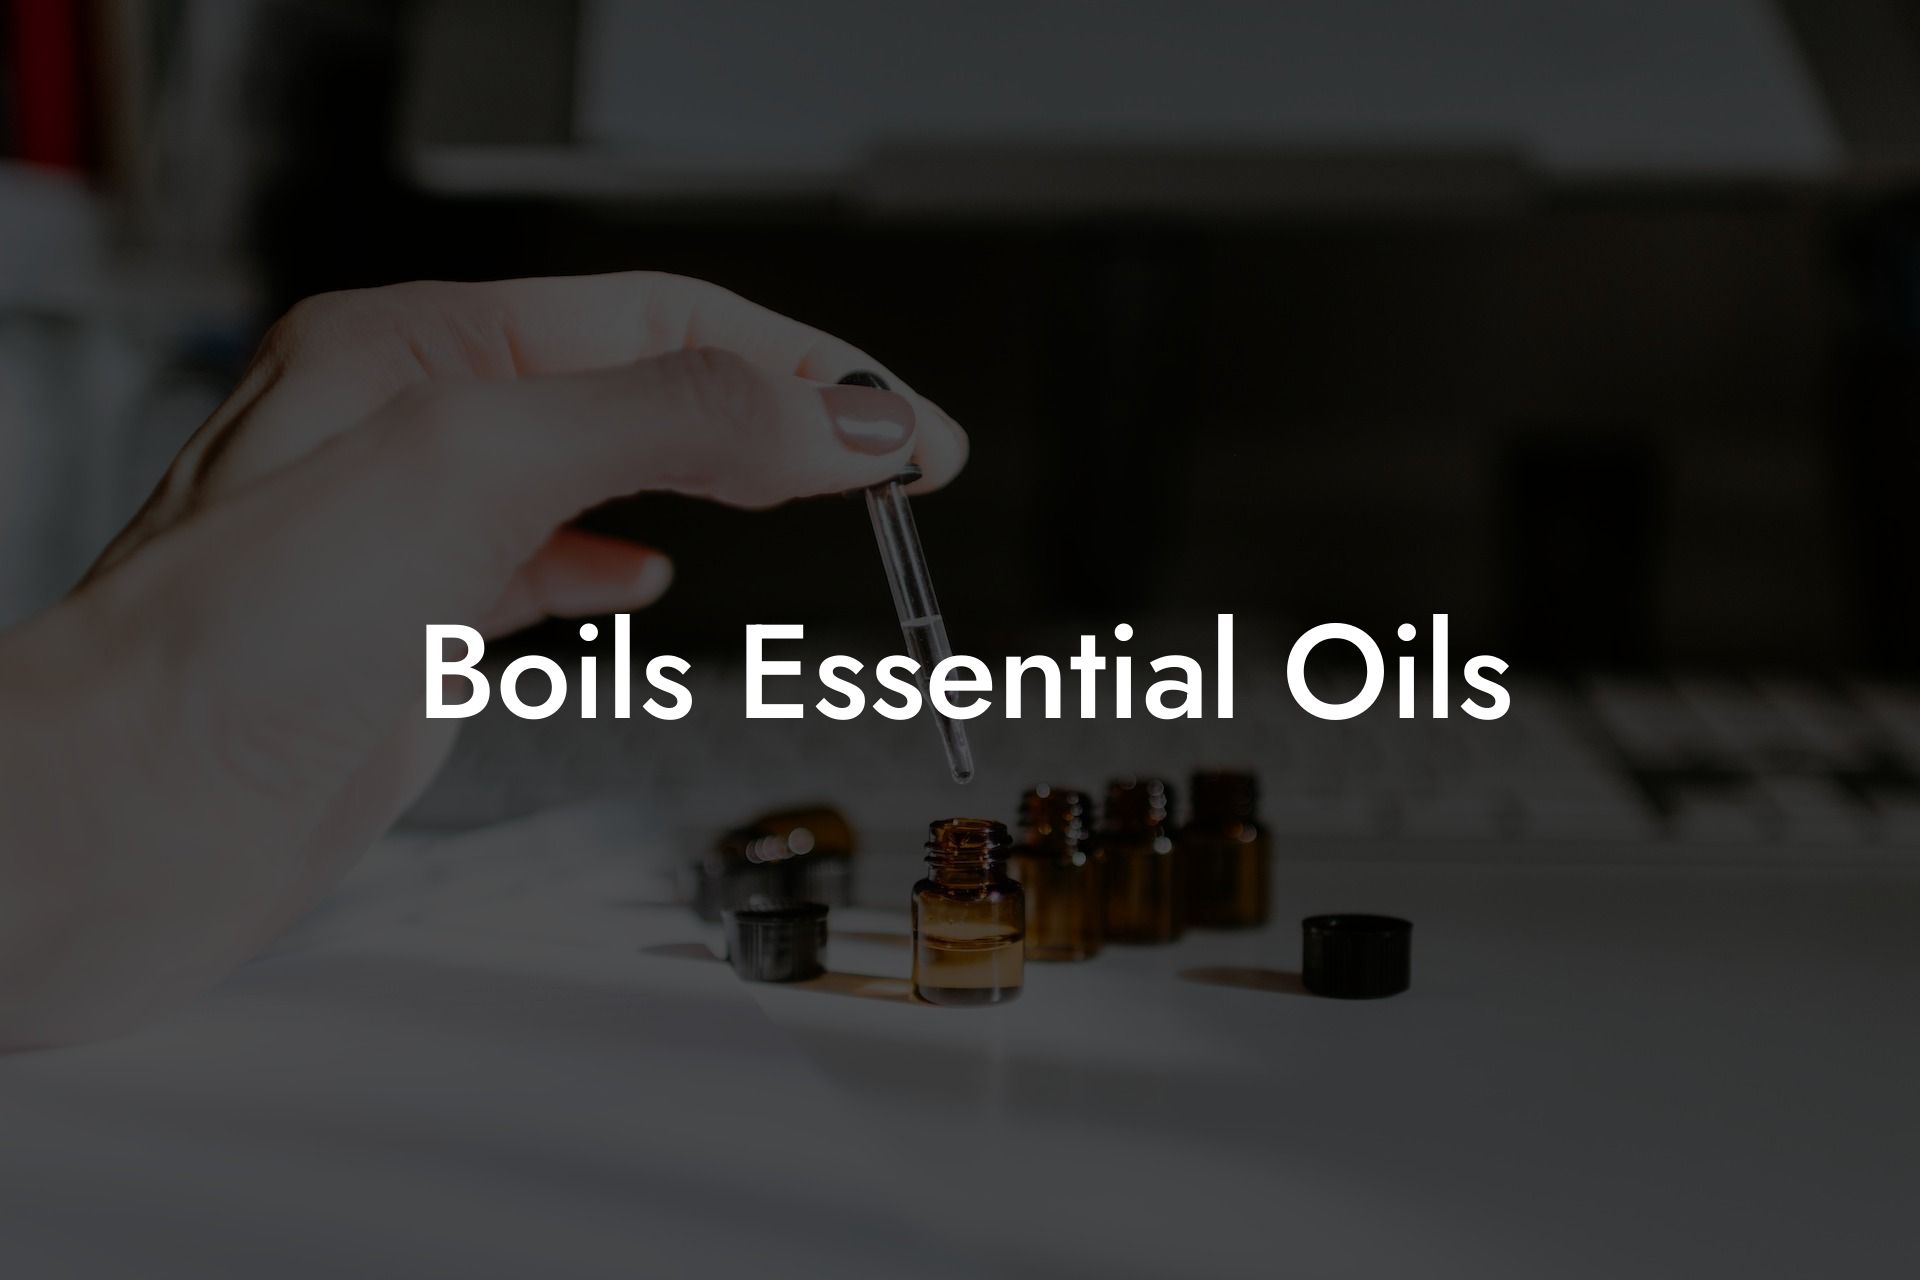 Boils Essential Oils